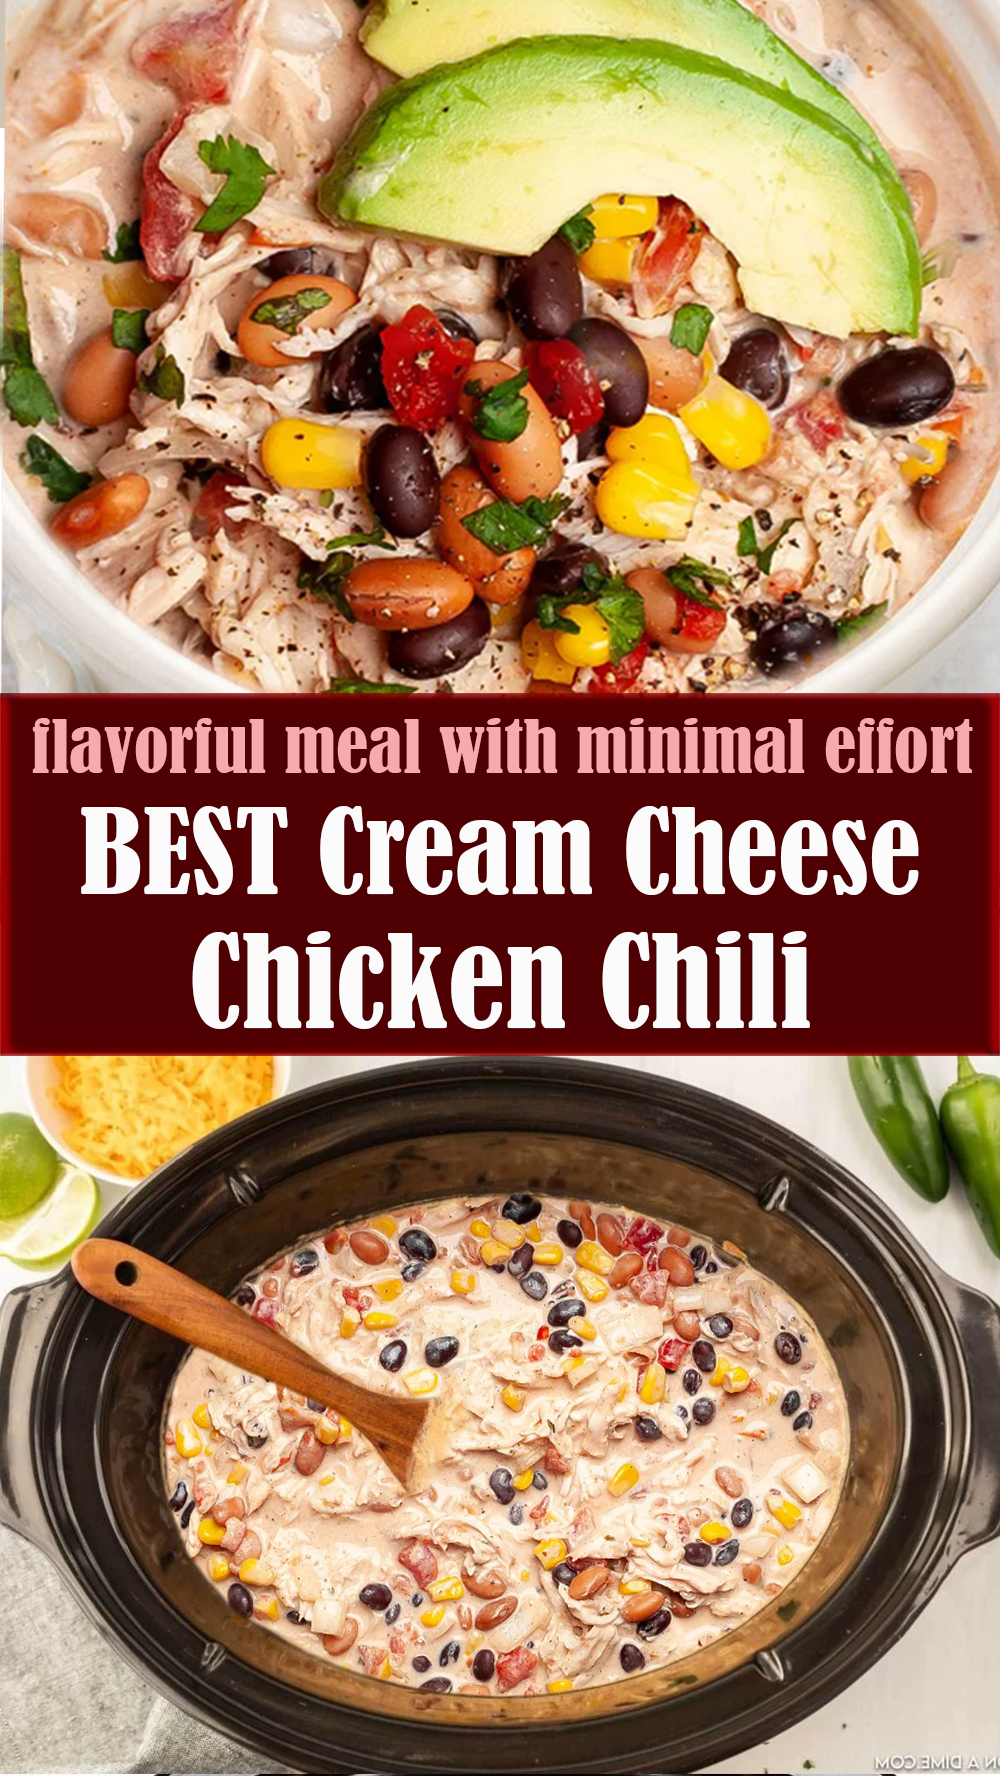 BEST Cream Cheese Chicken Chili Recipe